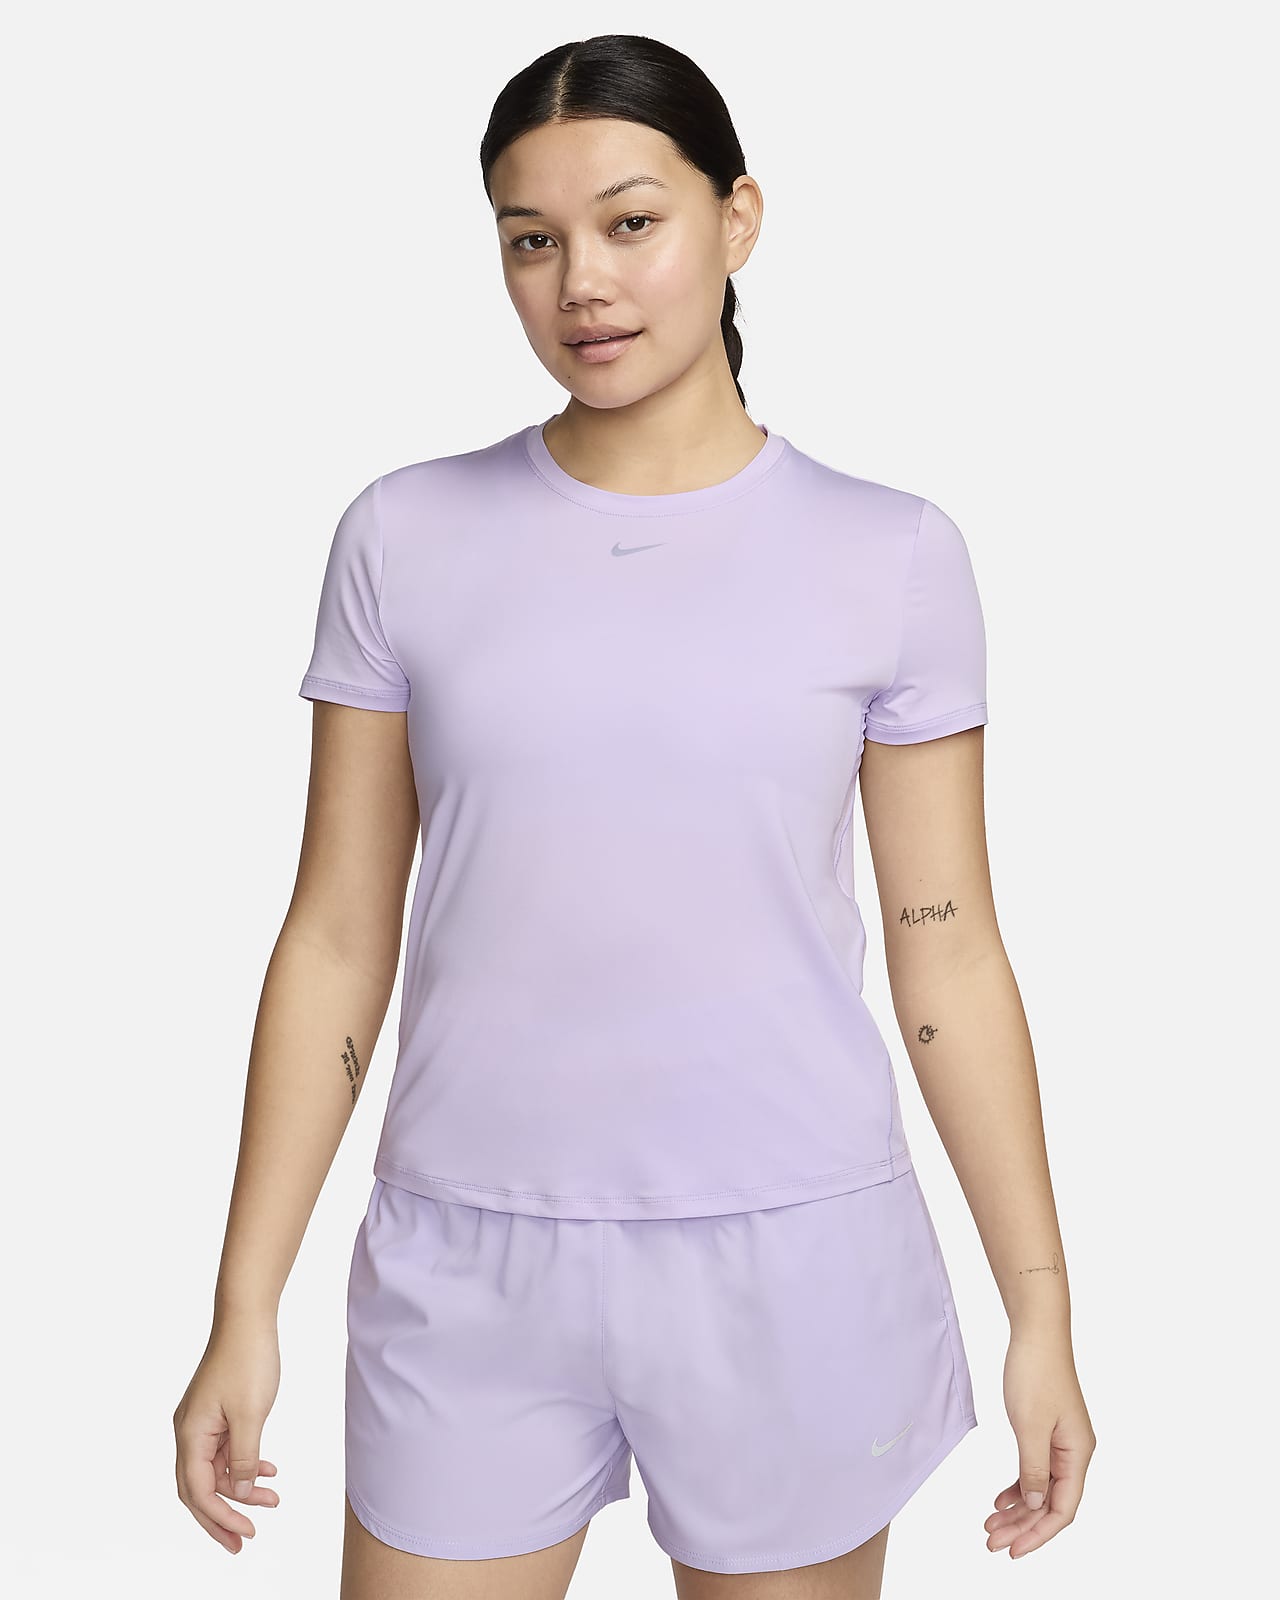 Γυναικεία κοντομάνικη μπλούζα Dri-FIT Nike One Classic